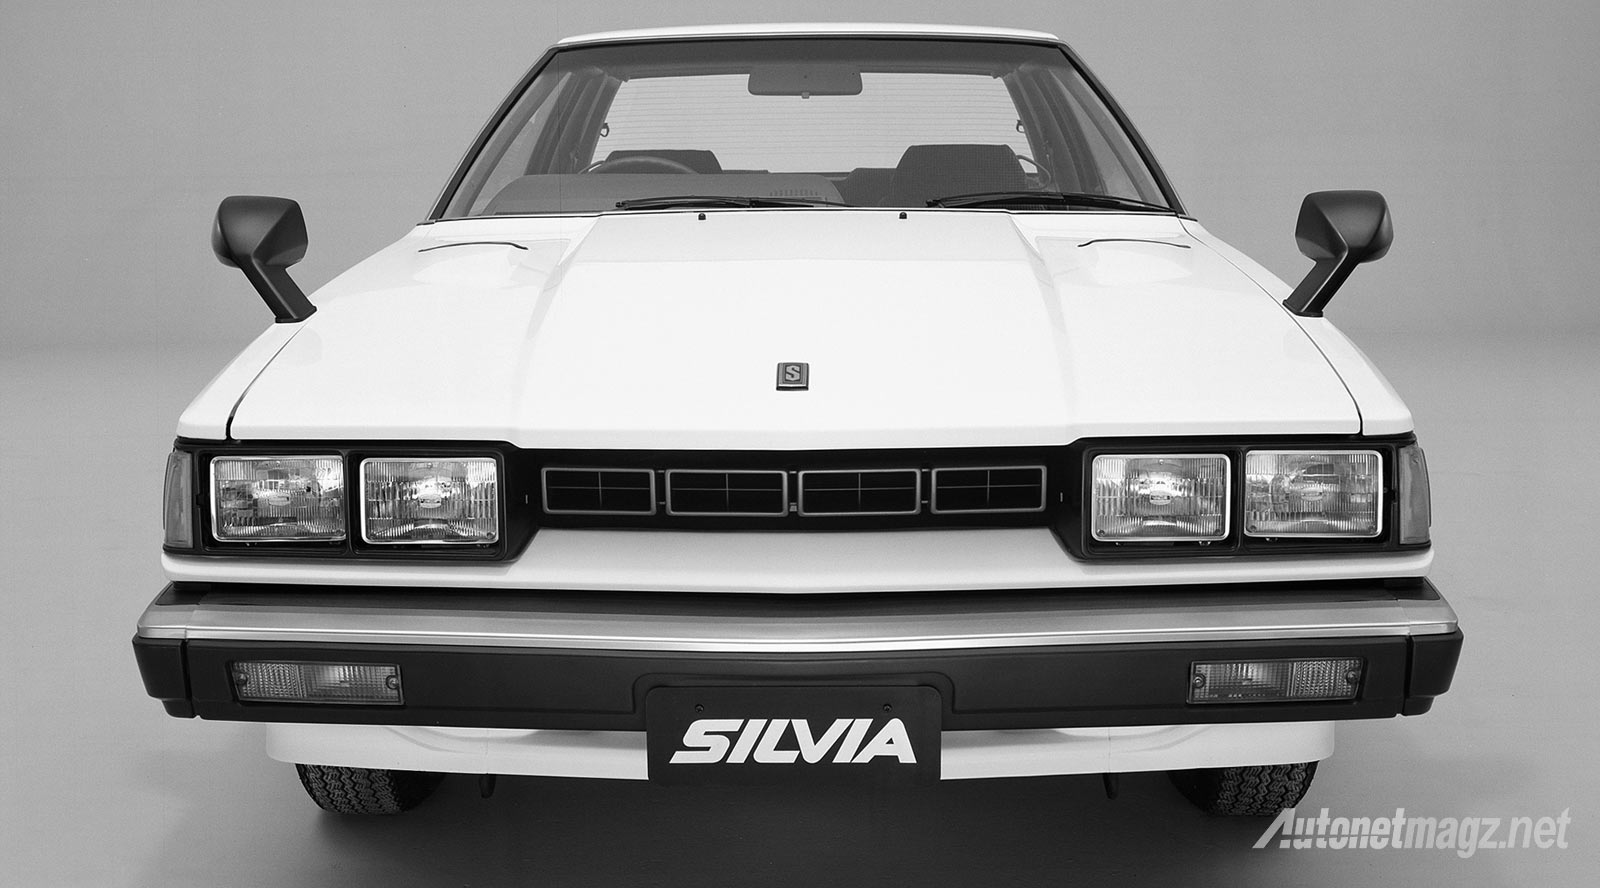 Berita, Cover-Silvia: Ini Dia Sejarah Nissan Silvia [Part 2]